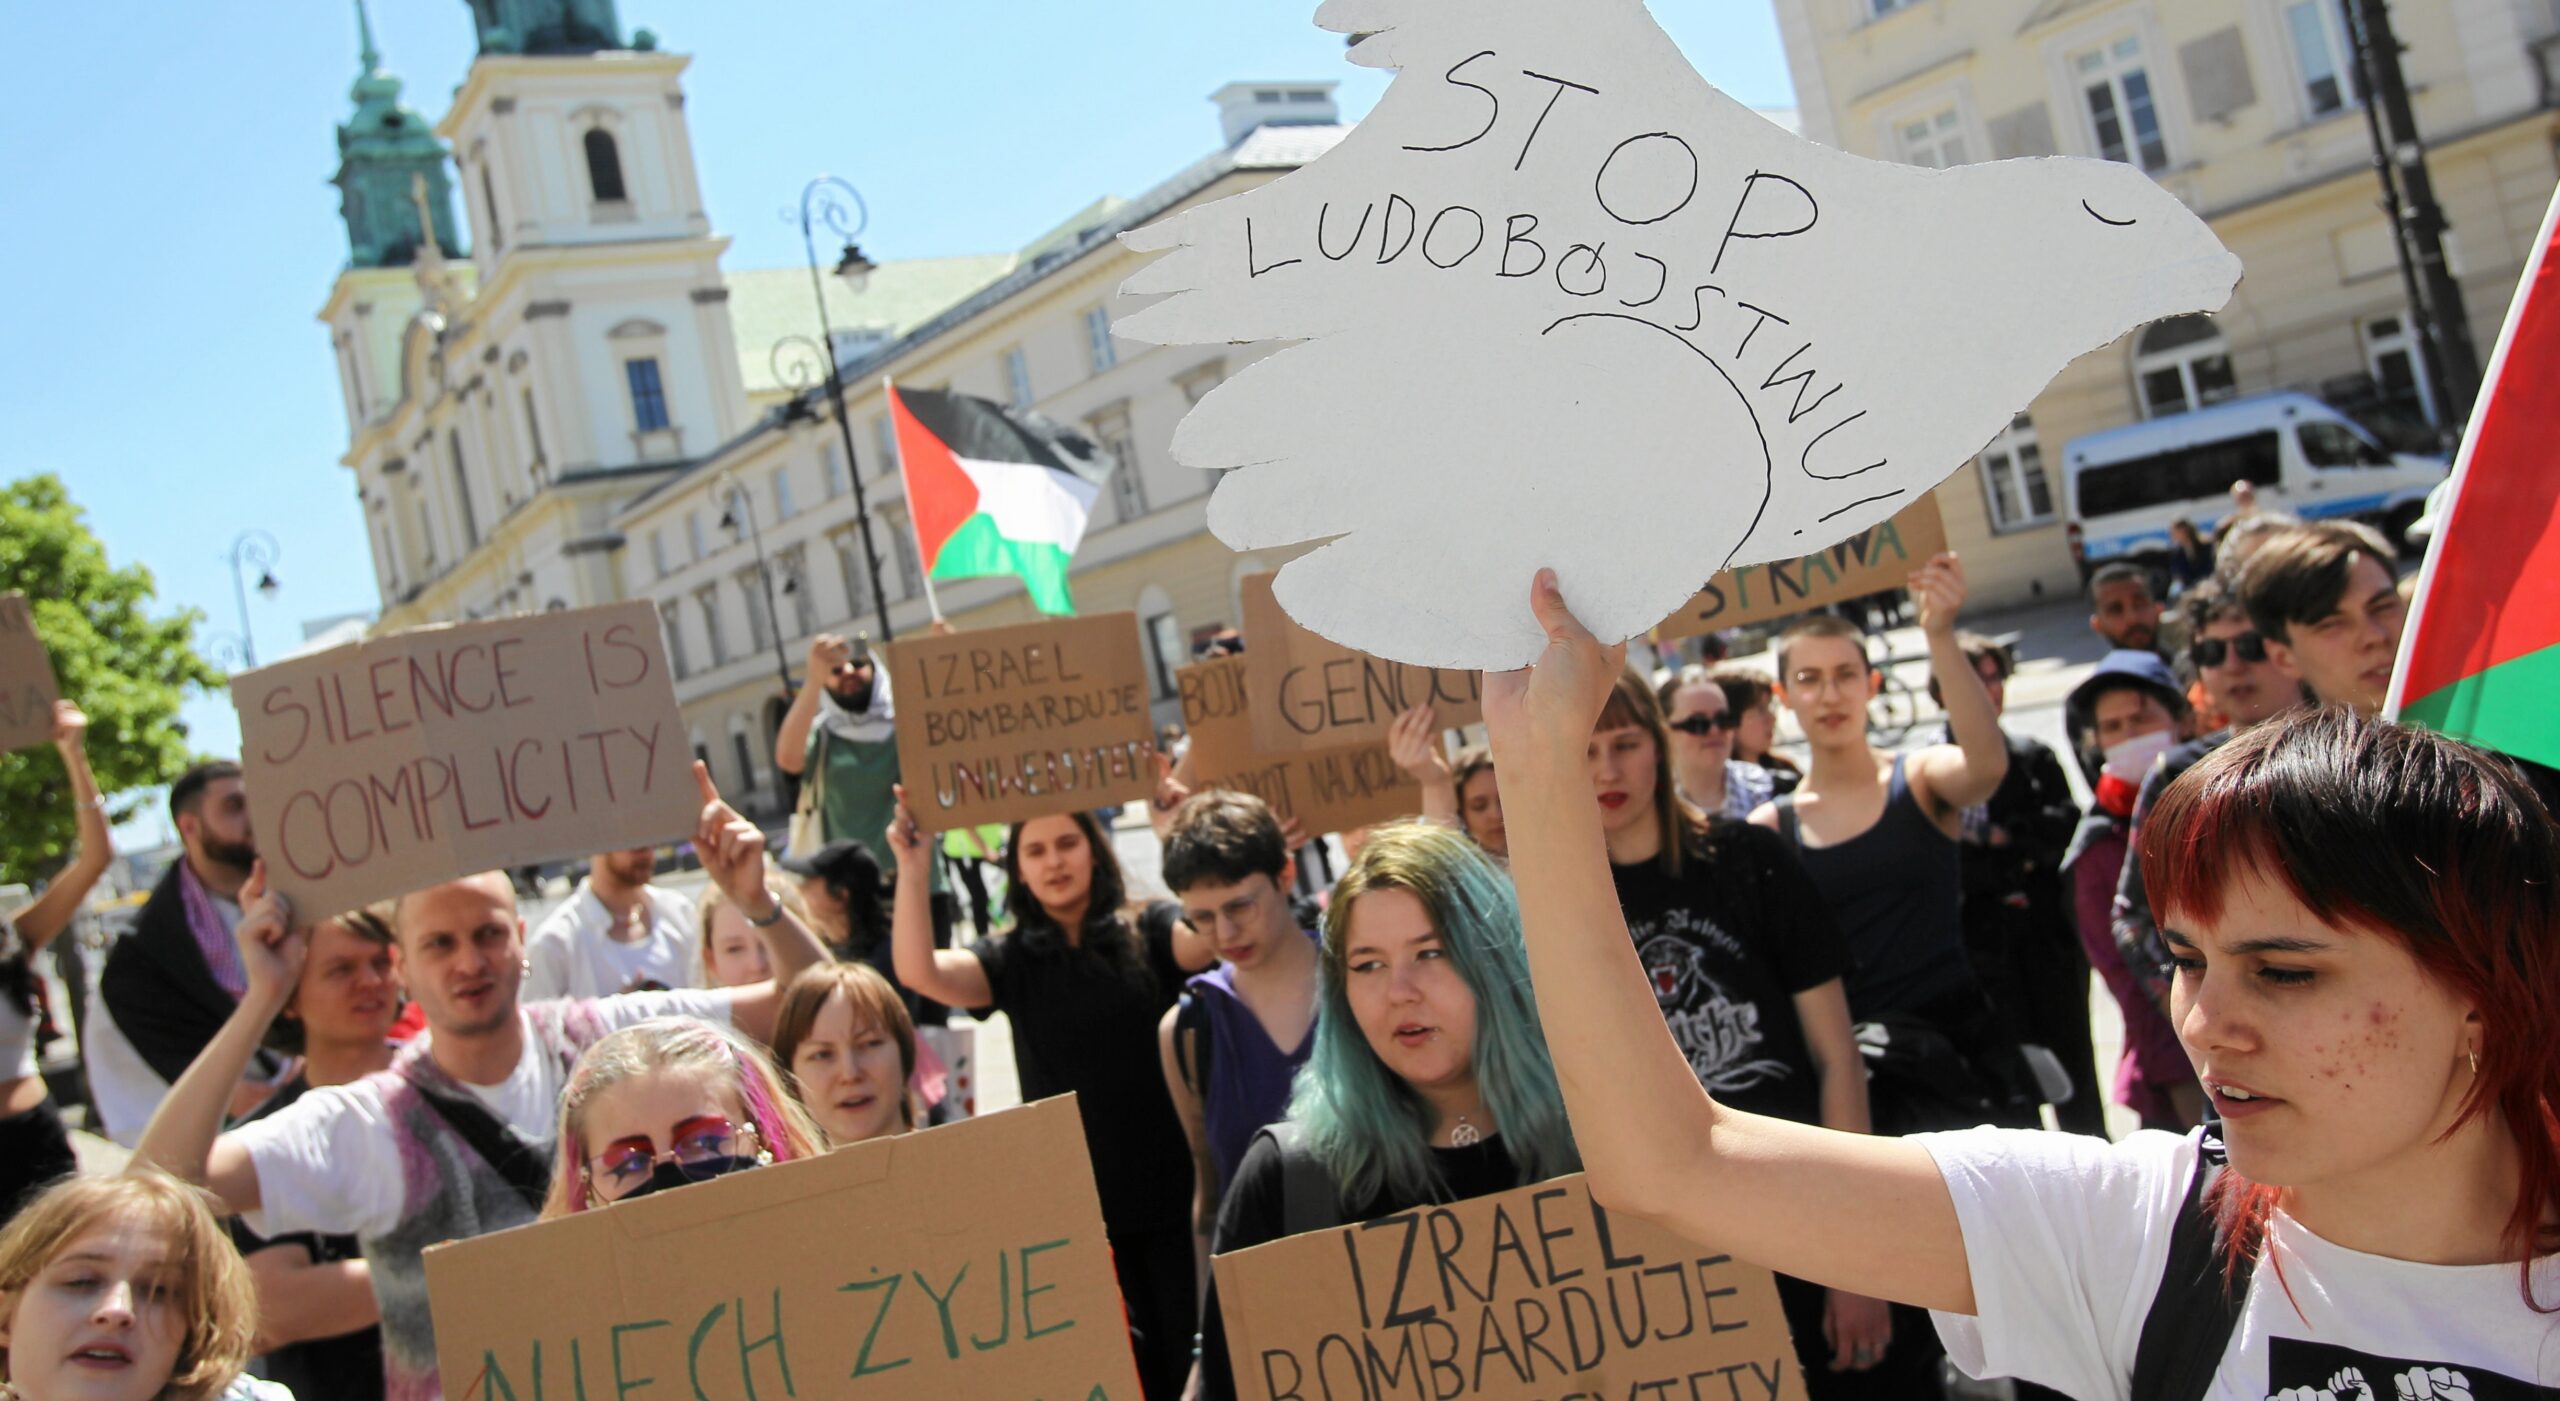 Tysiące osób podpisało listy wzywające polskie uniwersytety do bojkotu Izraela